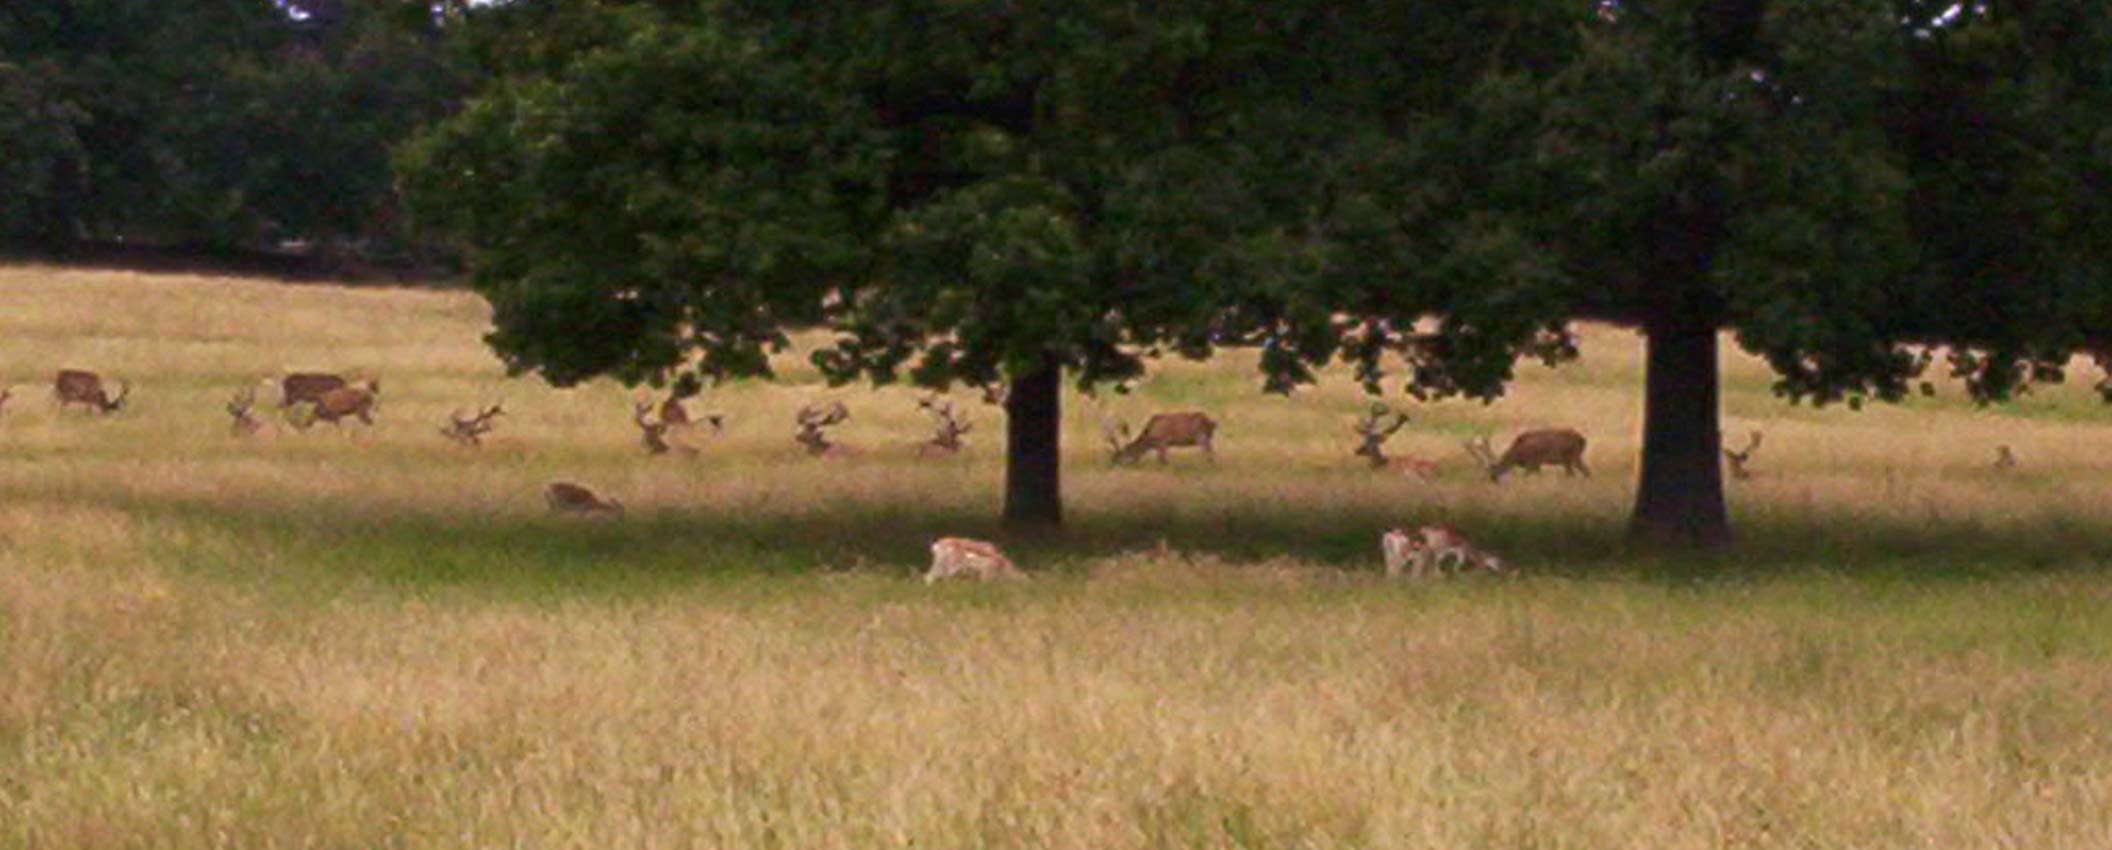 2004 Nottingham Wollaton House Deer Park